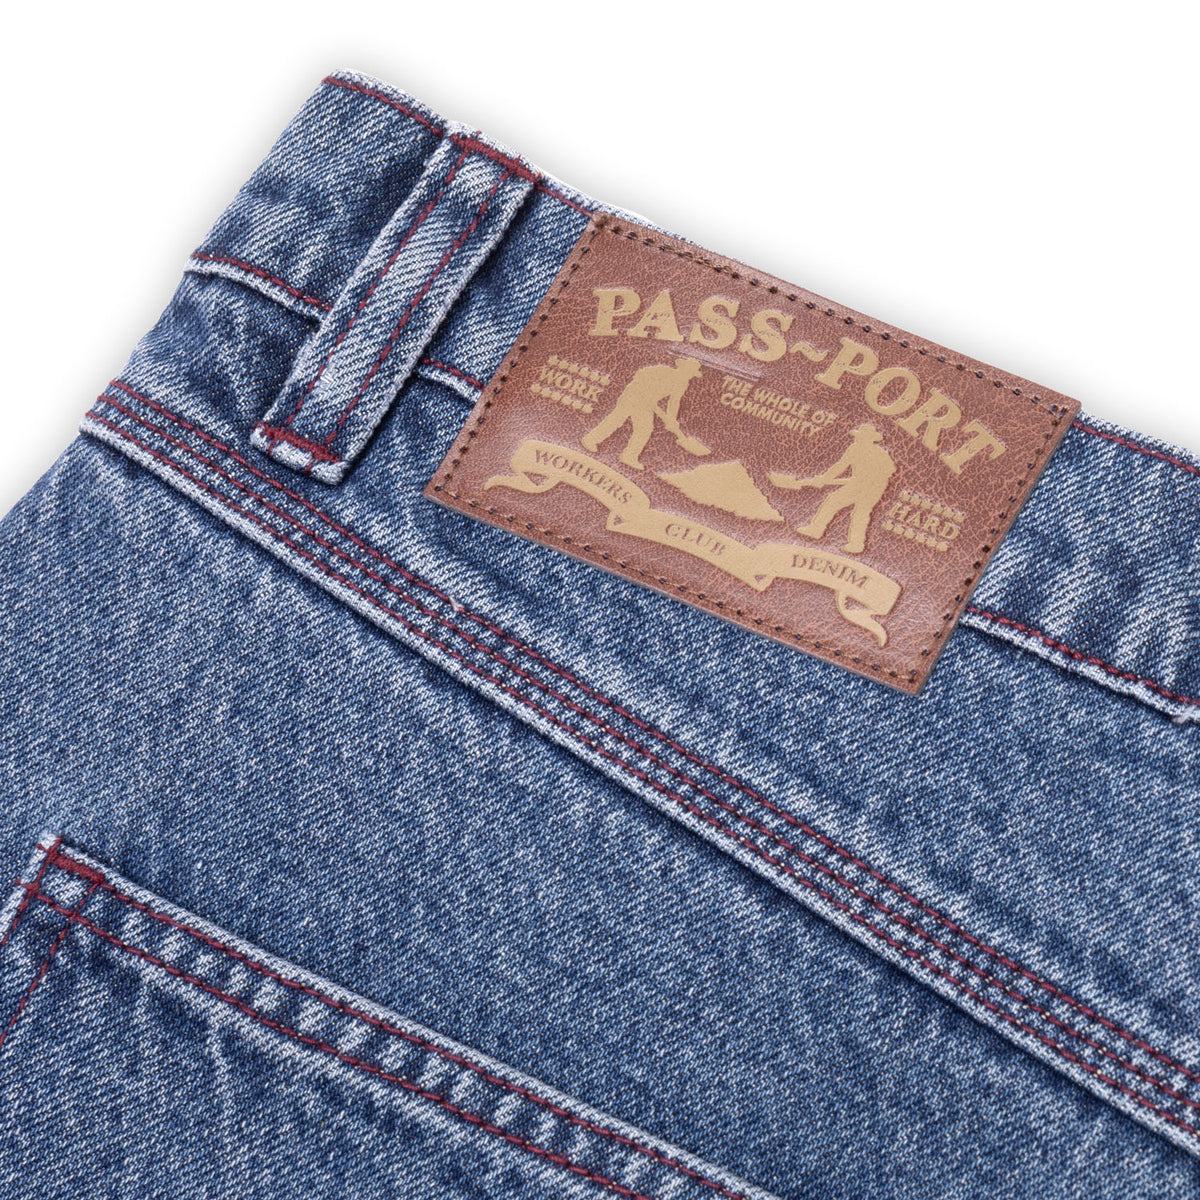 Pass~Port Workers Club Denim Shorts - Washed Dark Indigo